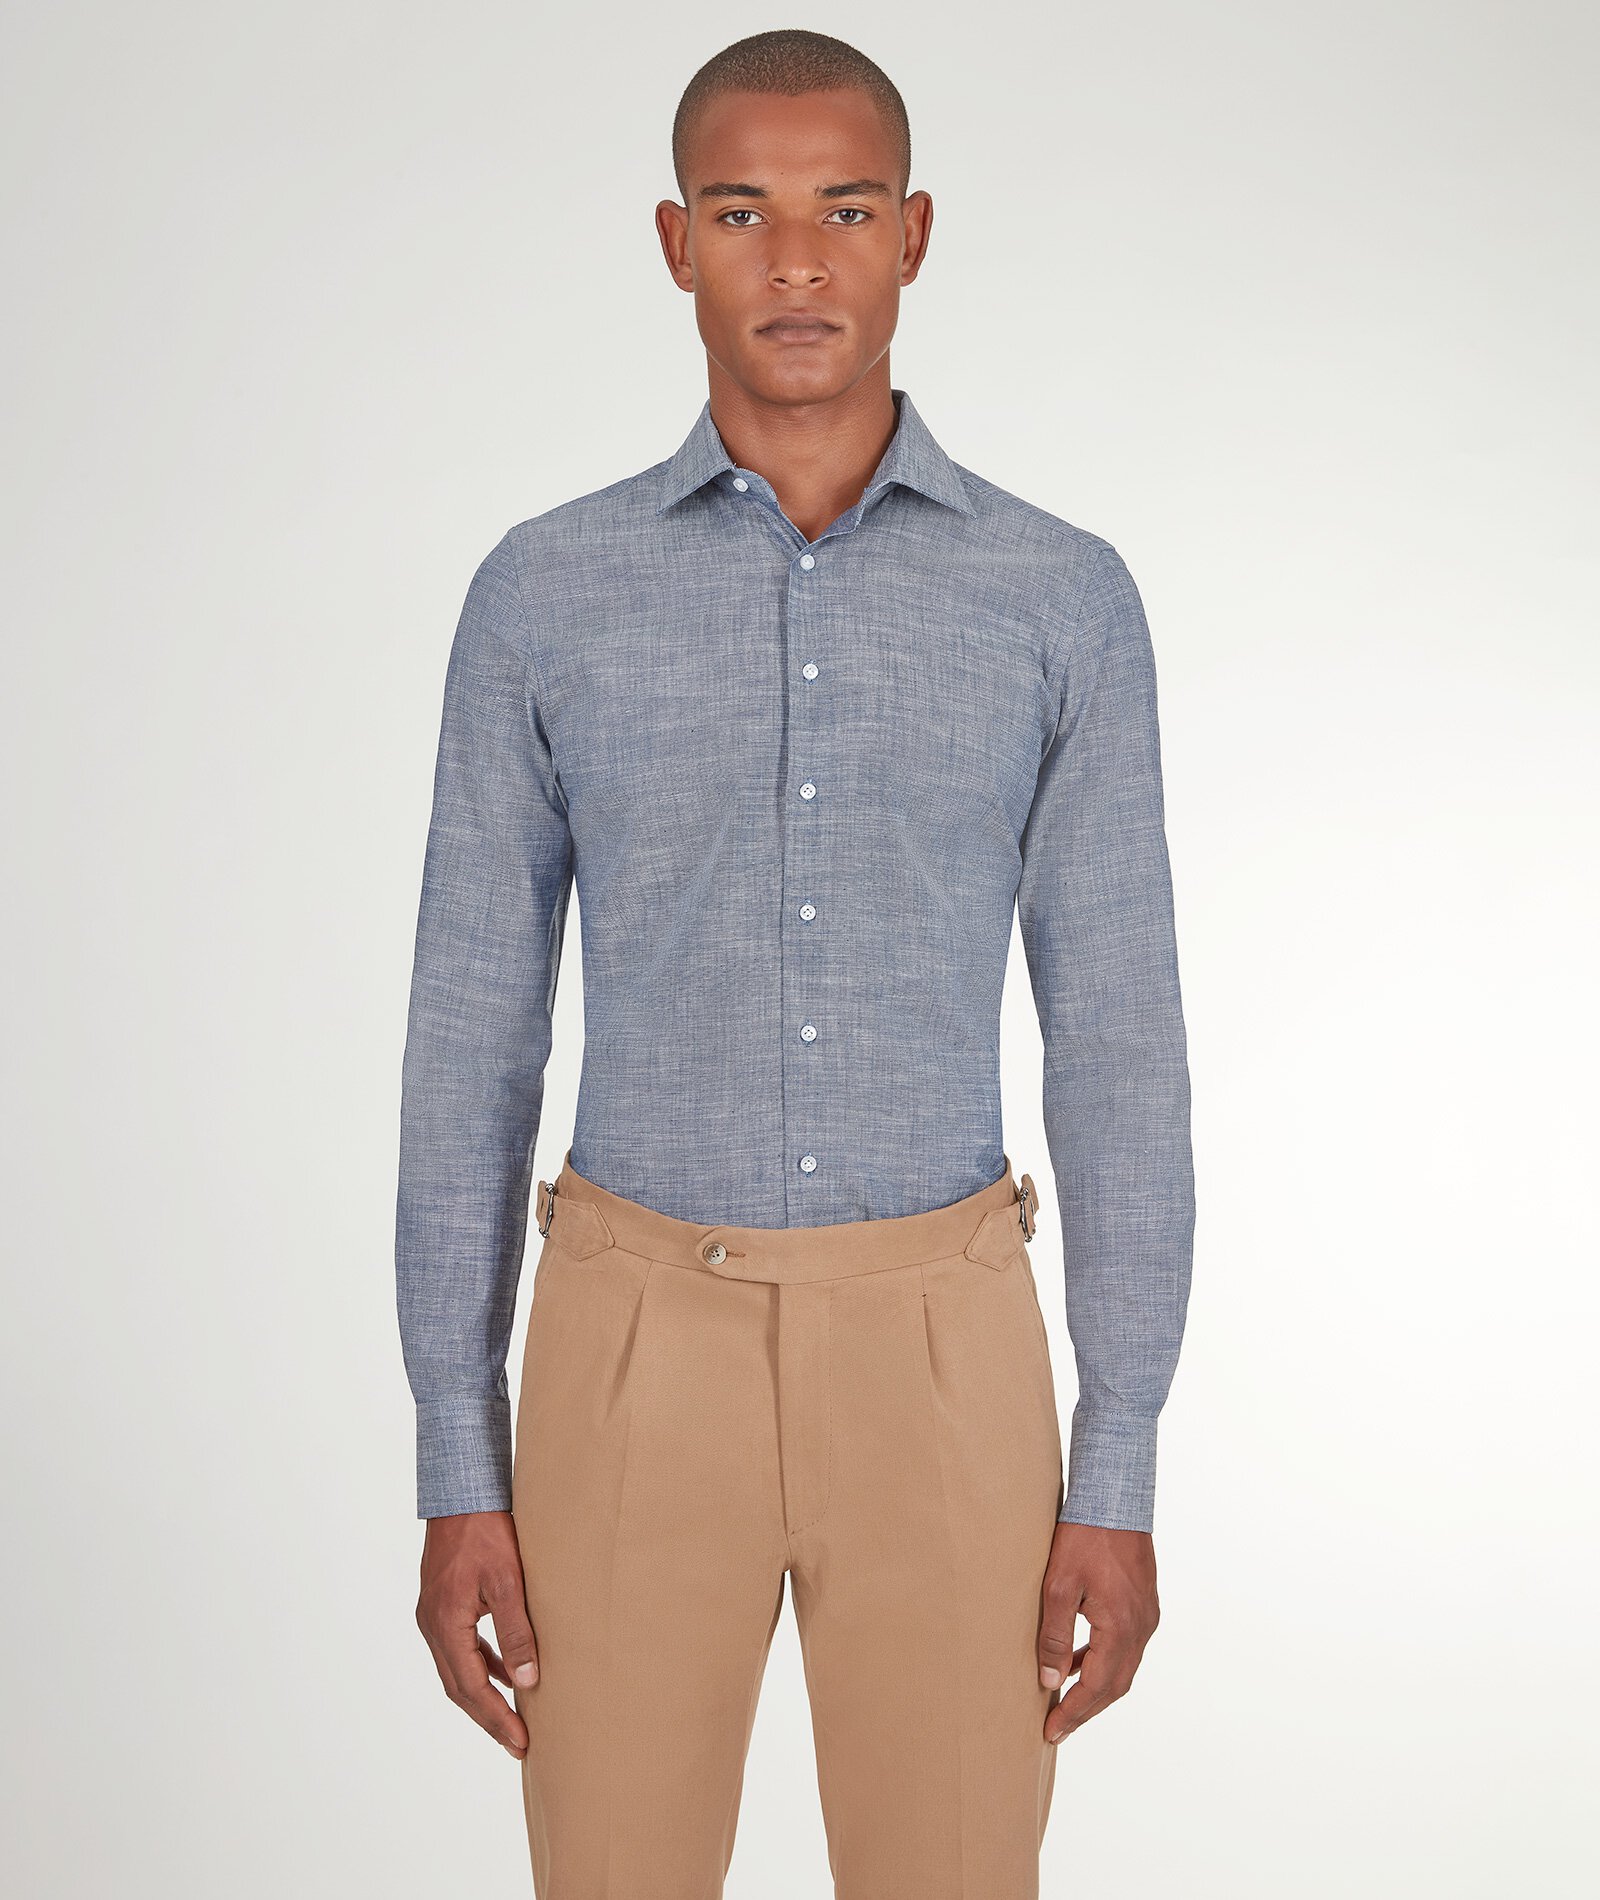 Image of Camicia da uomo su misura, Canclini, Azzurra in Denim di Cotone, Quattro Stagioni | Lanieri